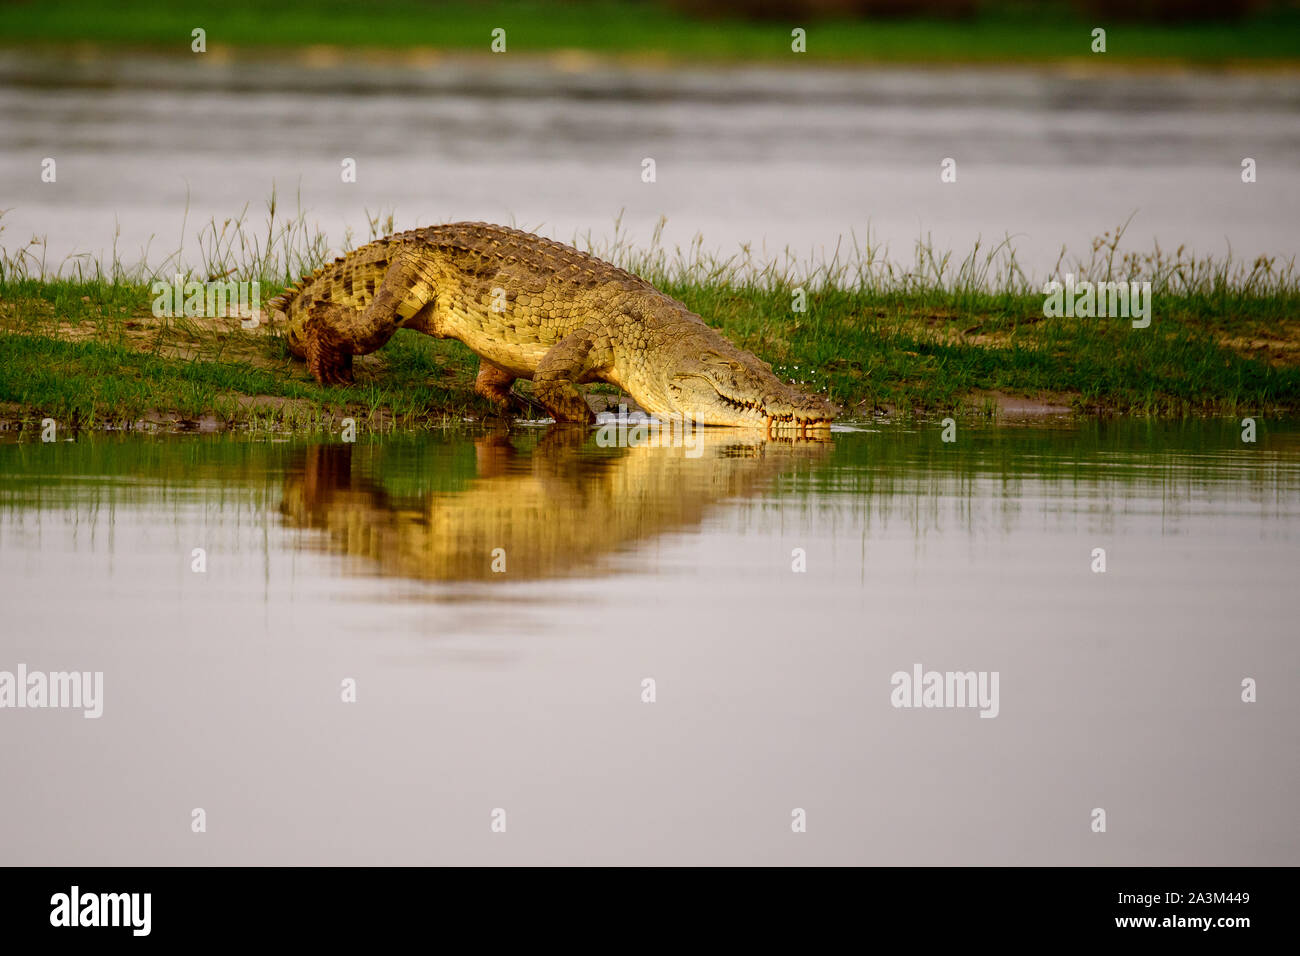 Nile crocodile at the water's edge Stock Photo